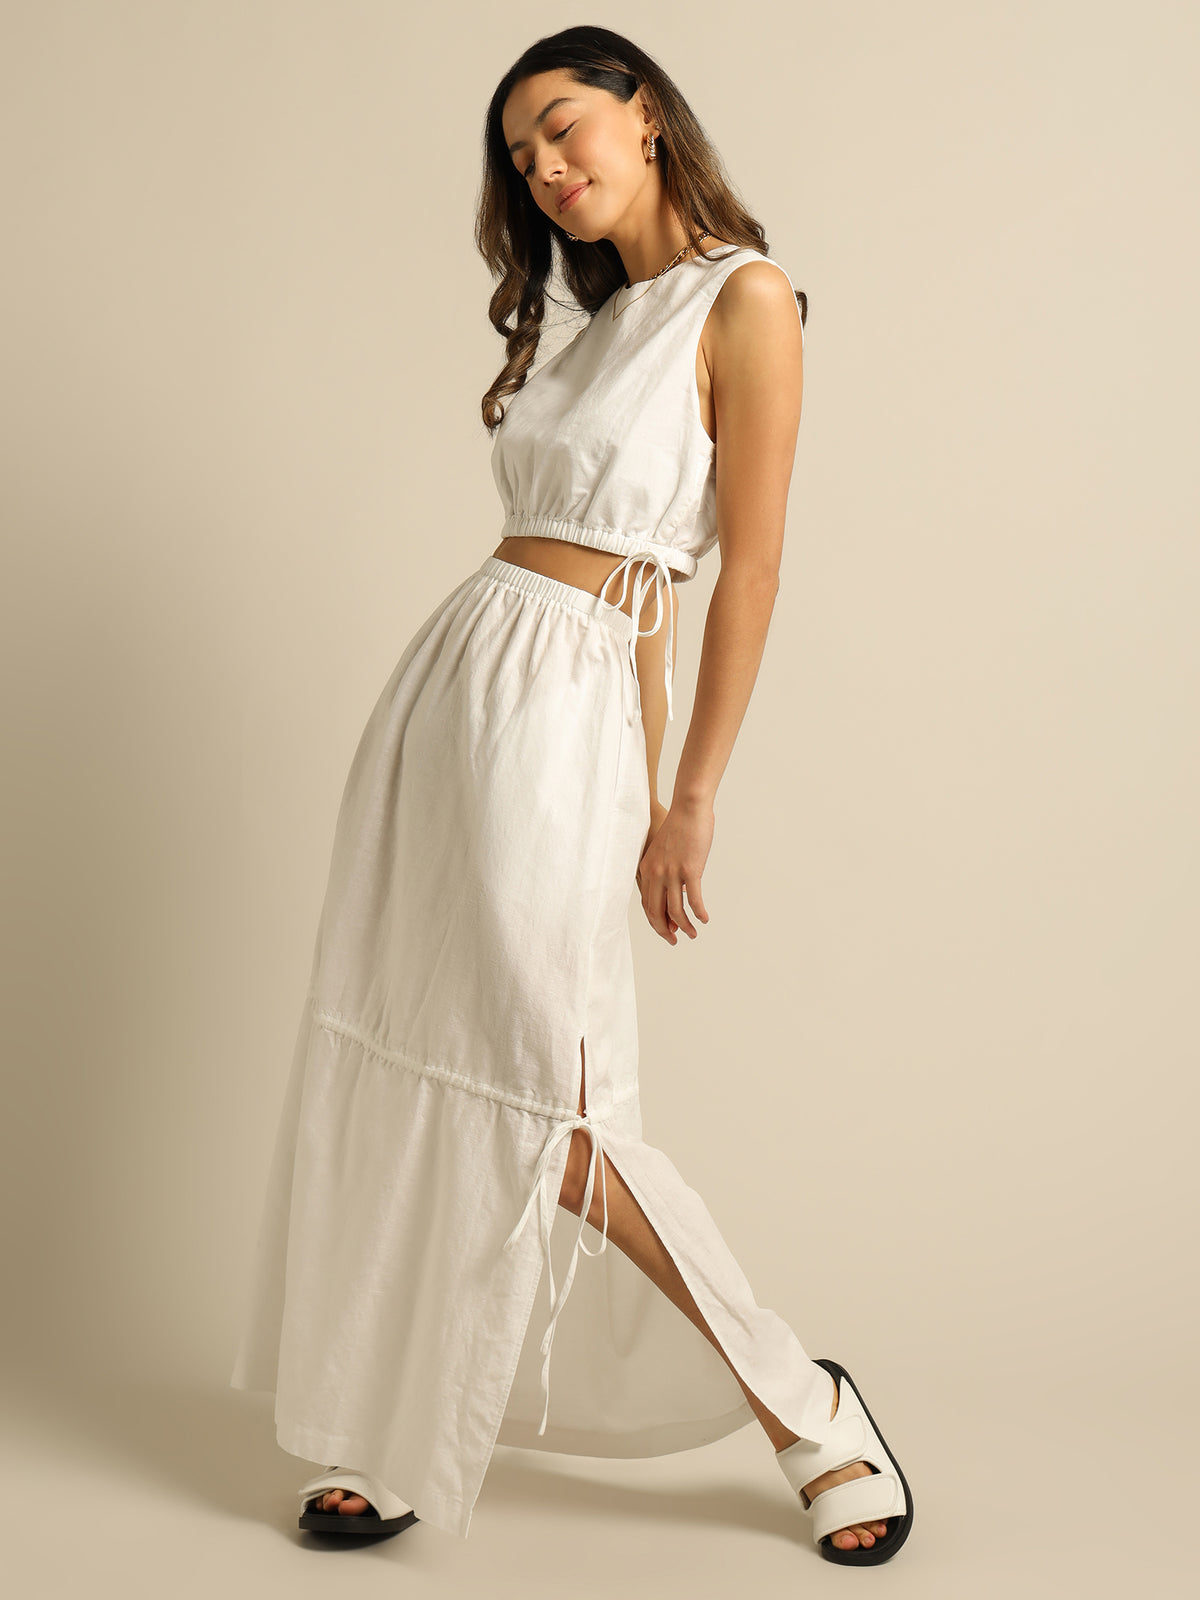 Brea Linen Maxi Skirt in White